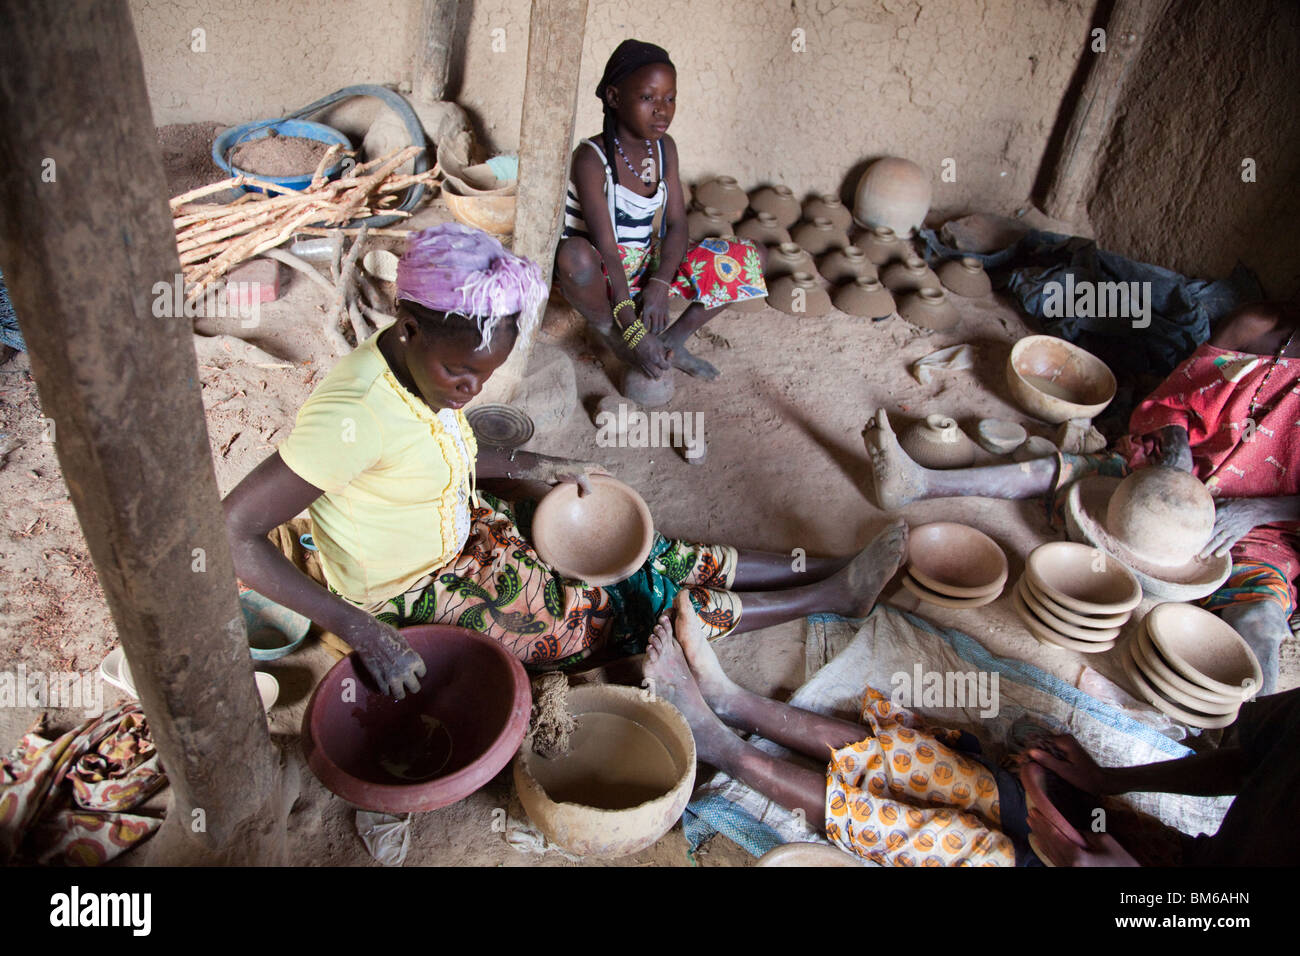 Dans la région de Kalabougou au Mali, les femmes ont travaillé pendant des siècles comme potiers traditionnels, avec plusieurs générations travaillant ensemble. Banque D'Images